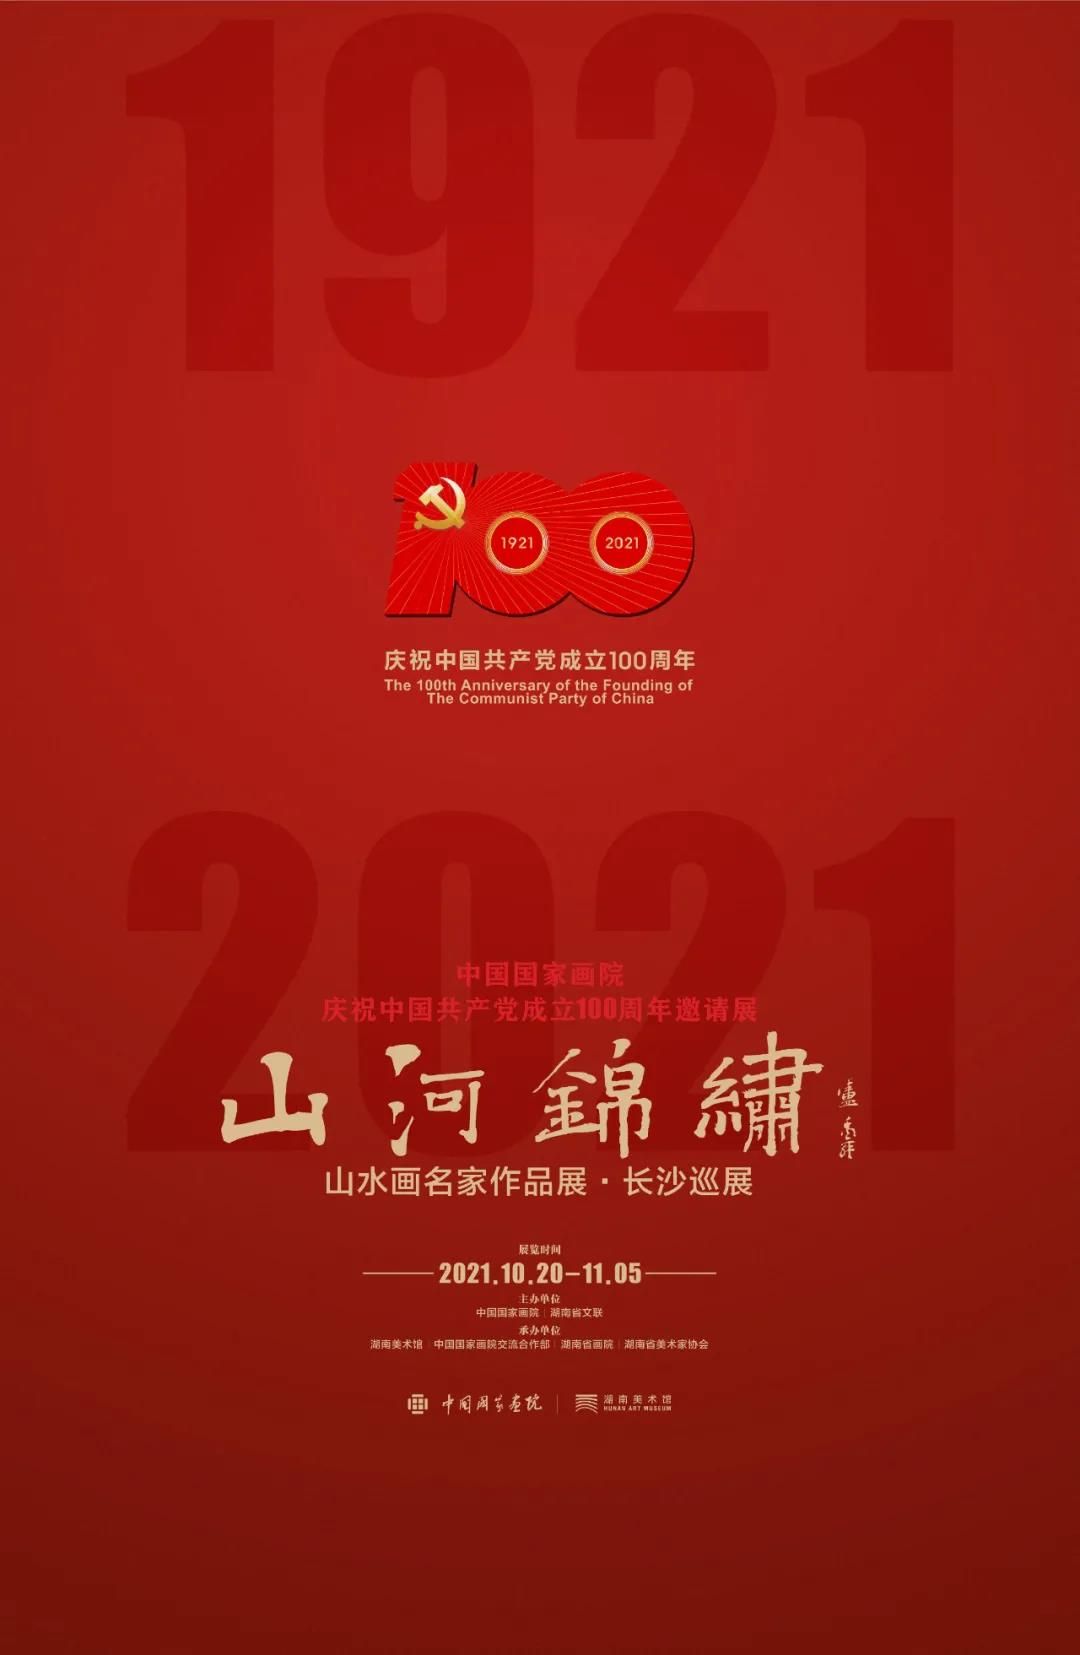 中国国家画院庆祝中国共产党成立100周年邀请展：“山河锦绣”山水画名家作品展·长沙巡展